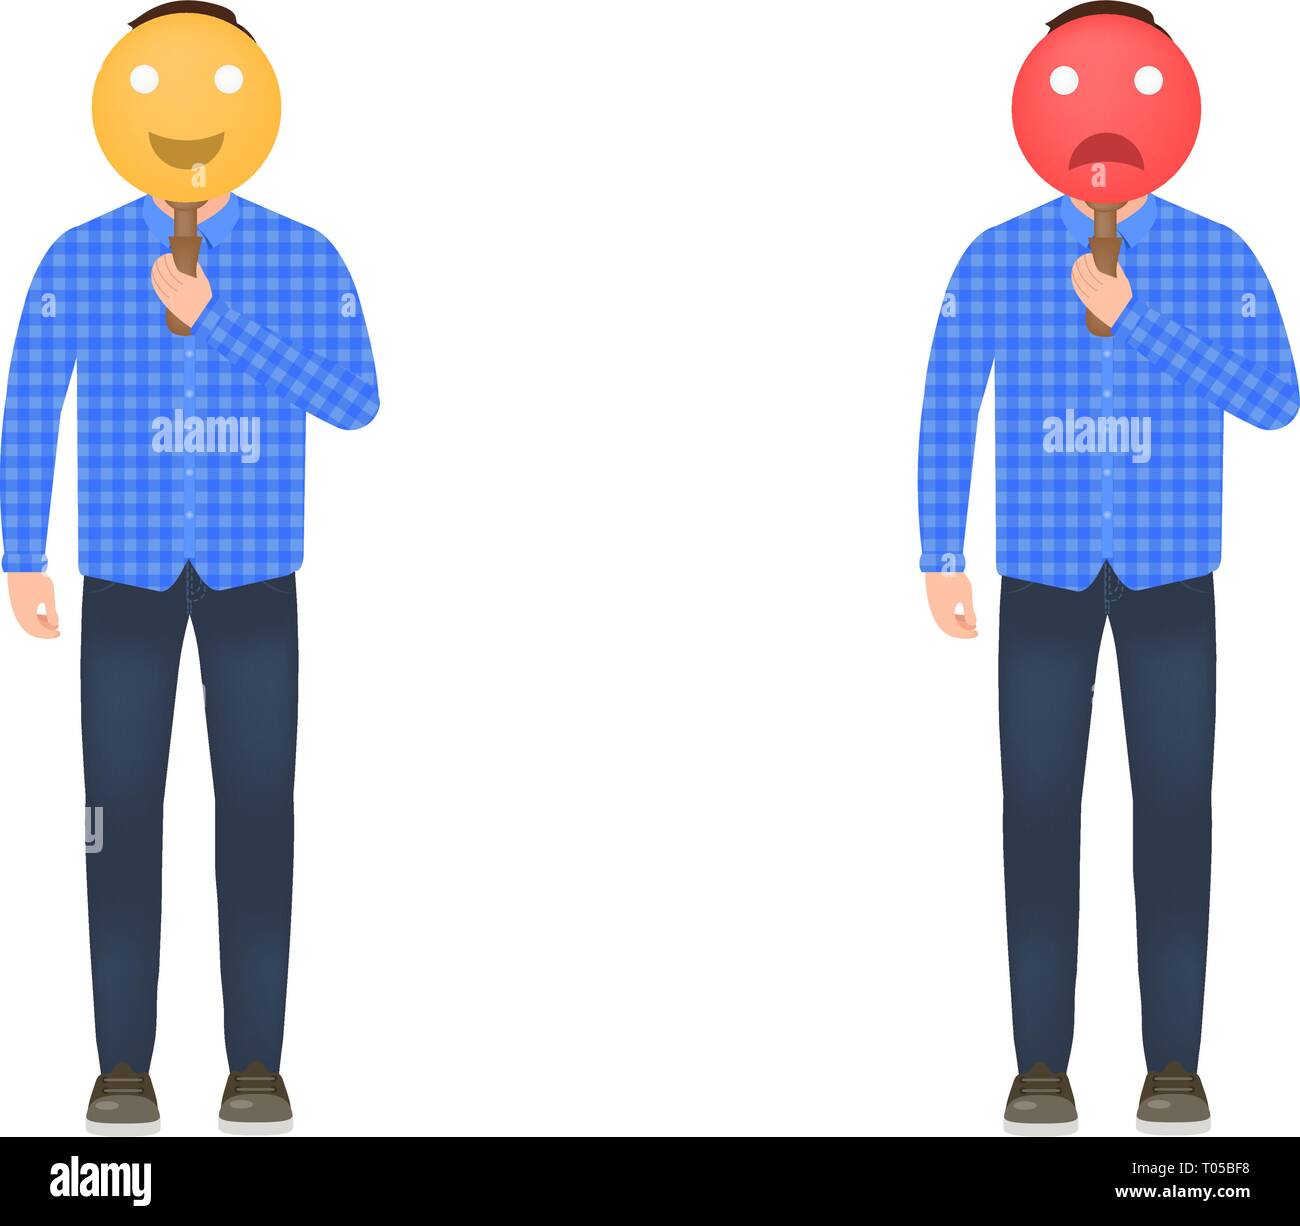 Ein Mann hält eine Maske mit einem fröhlichen und traurigen Gesicht, die Stimmung von einem Mann, ein Mann in einem Plaid Shirt, Jeans und Turnschuhe, ein Charakter in einem Cartoon Stil Stock Vektor